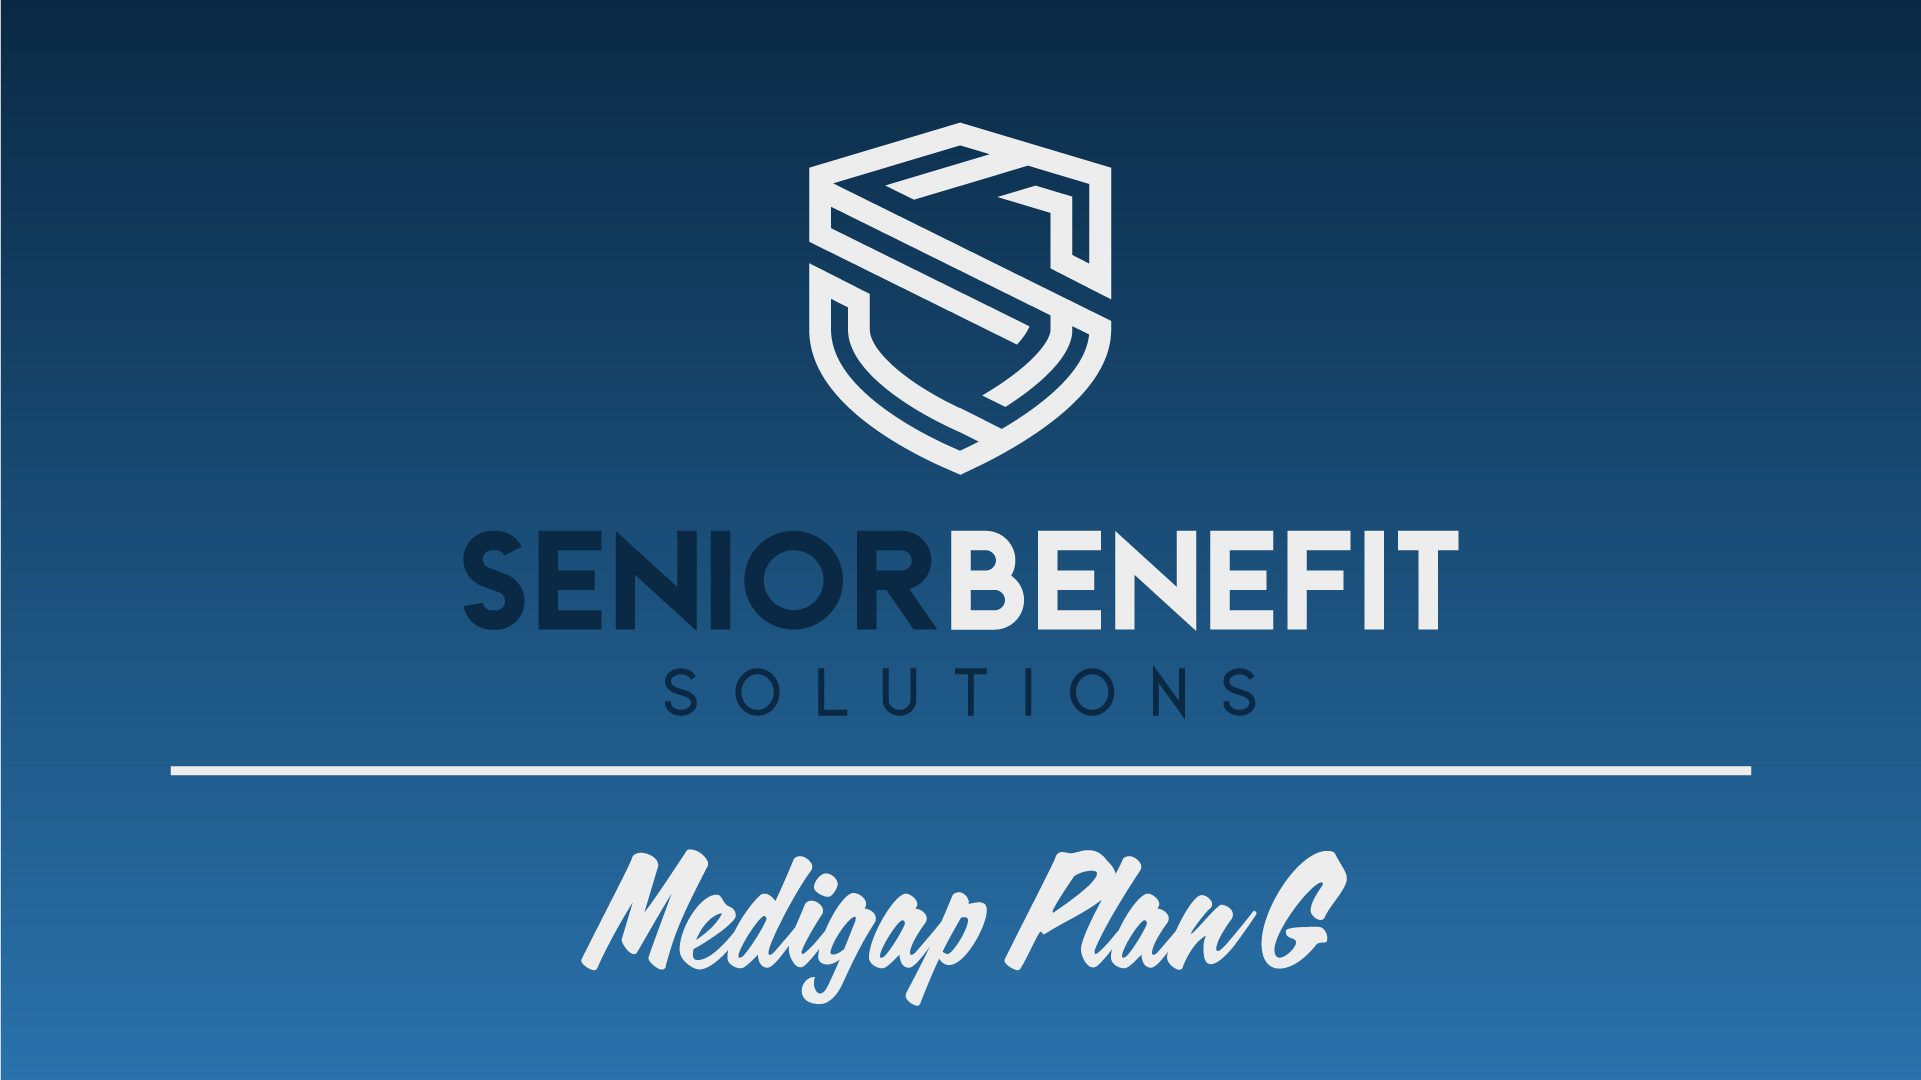 Senior Benefit Solutions; Medigap Plan G